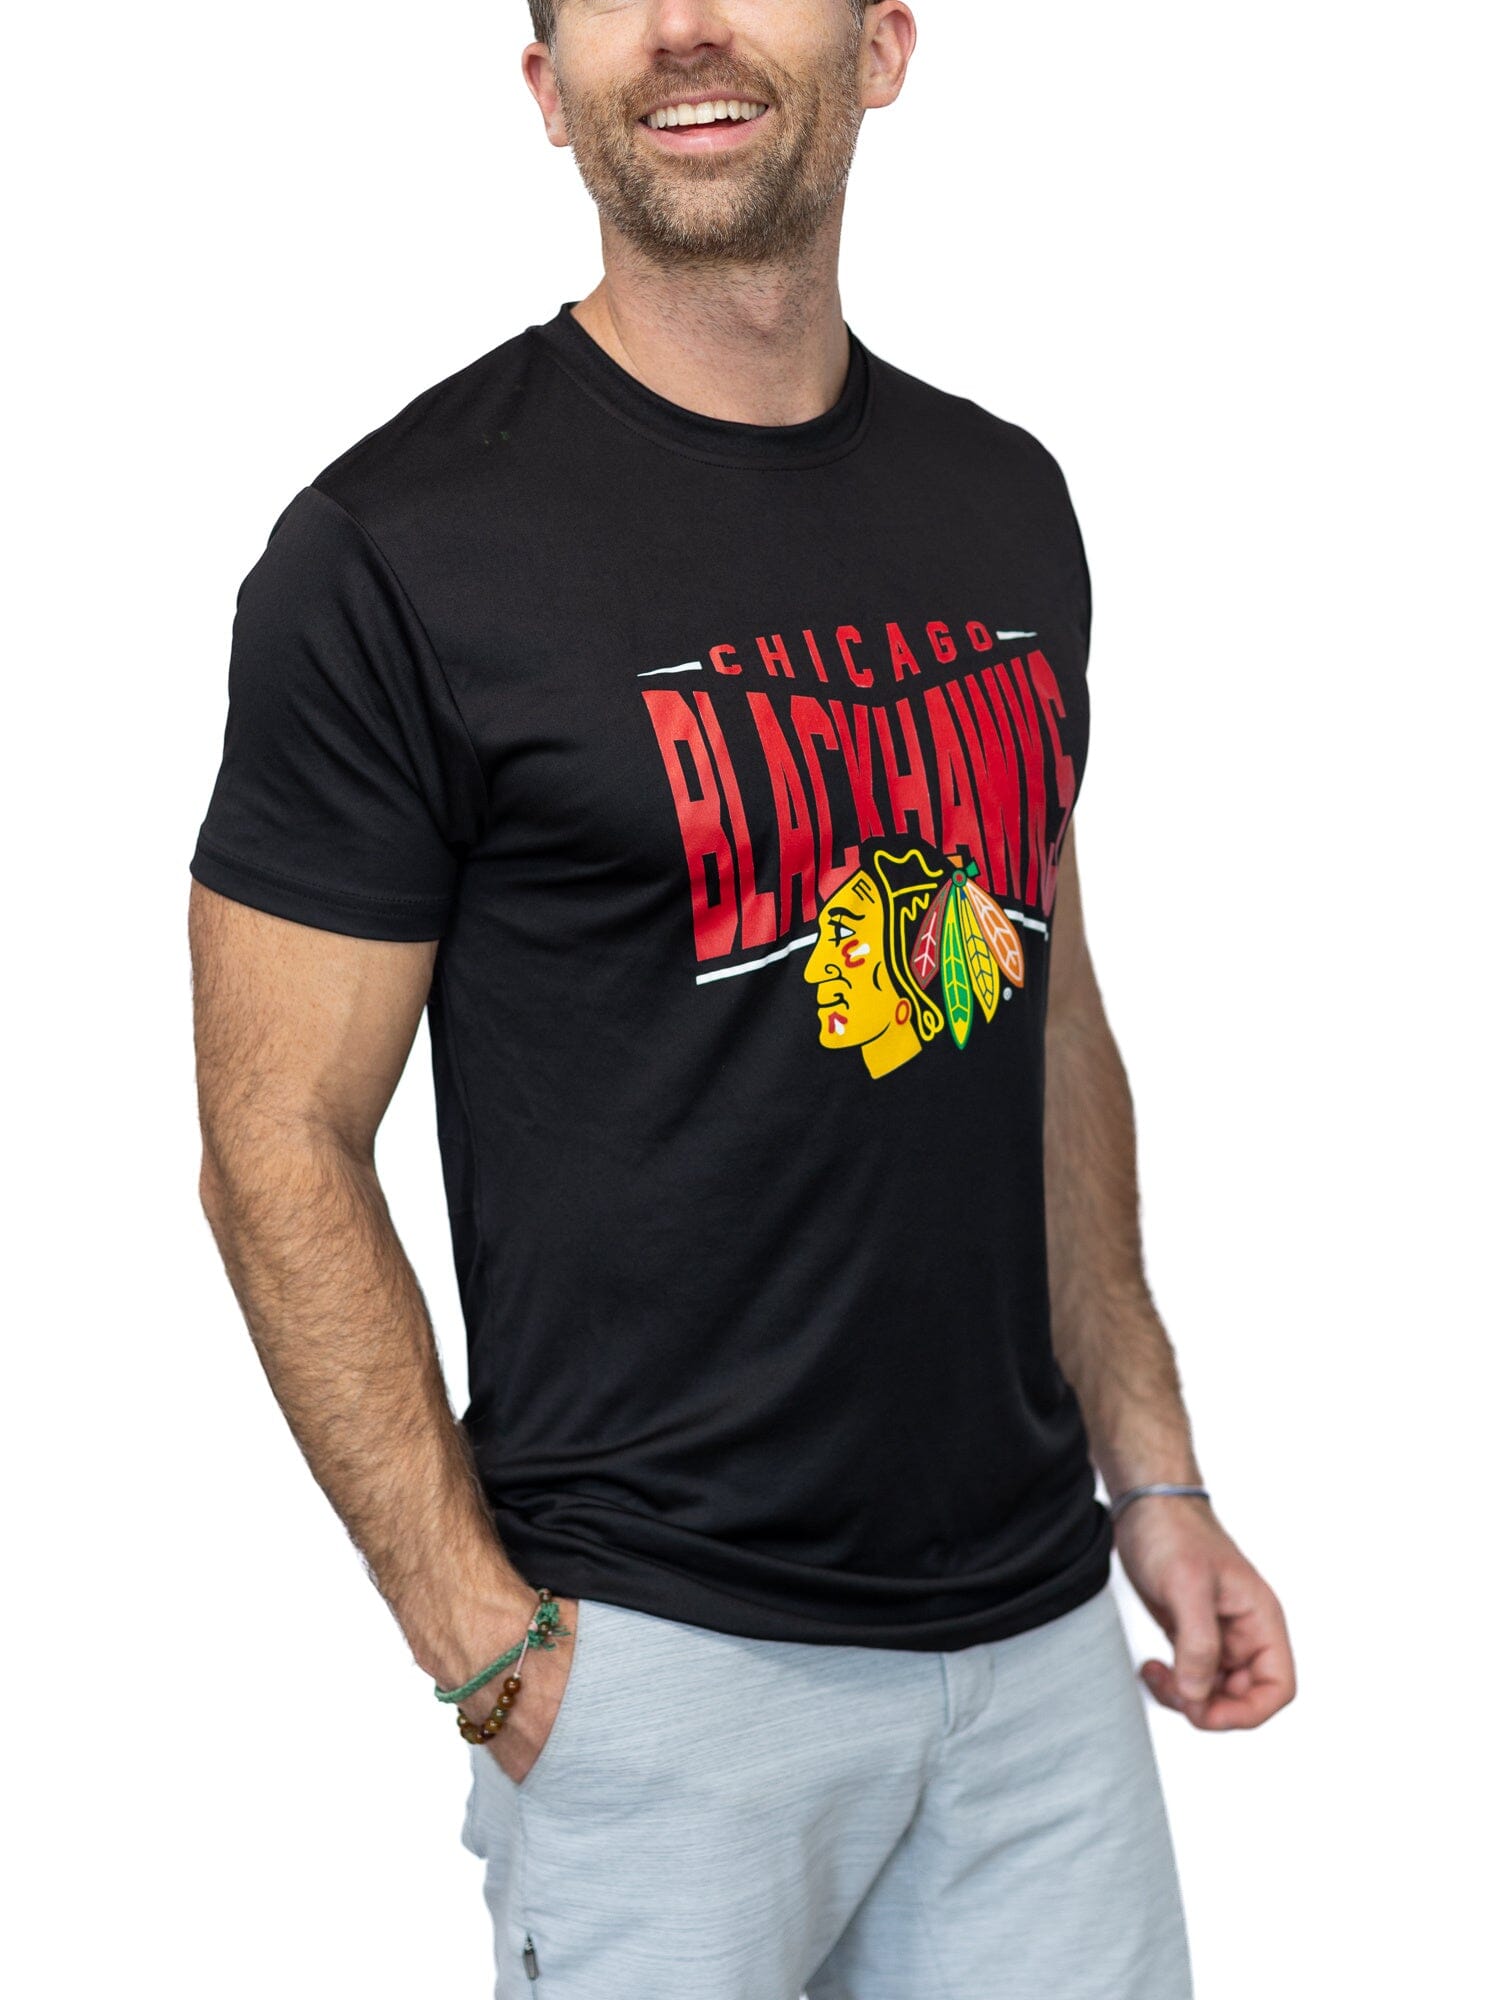 Chicago Blackhawks "Full Fandom" Moisture Wicking T-Shirt - Front 2